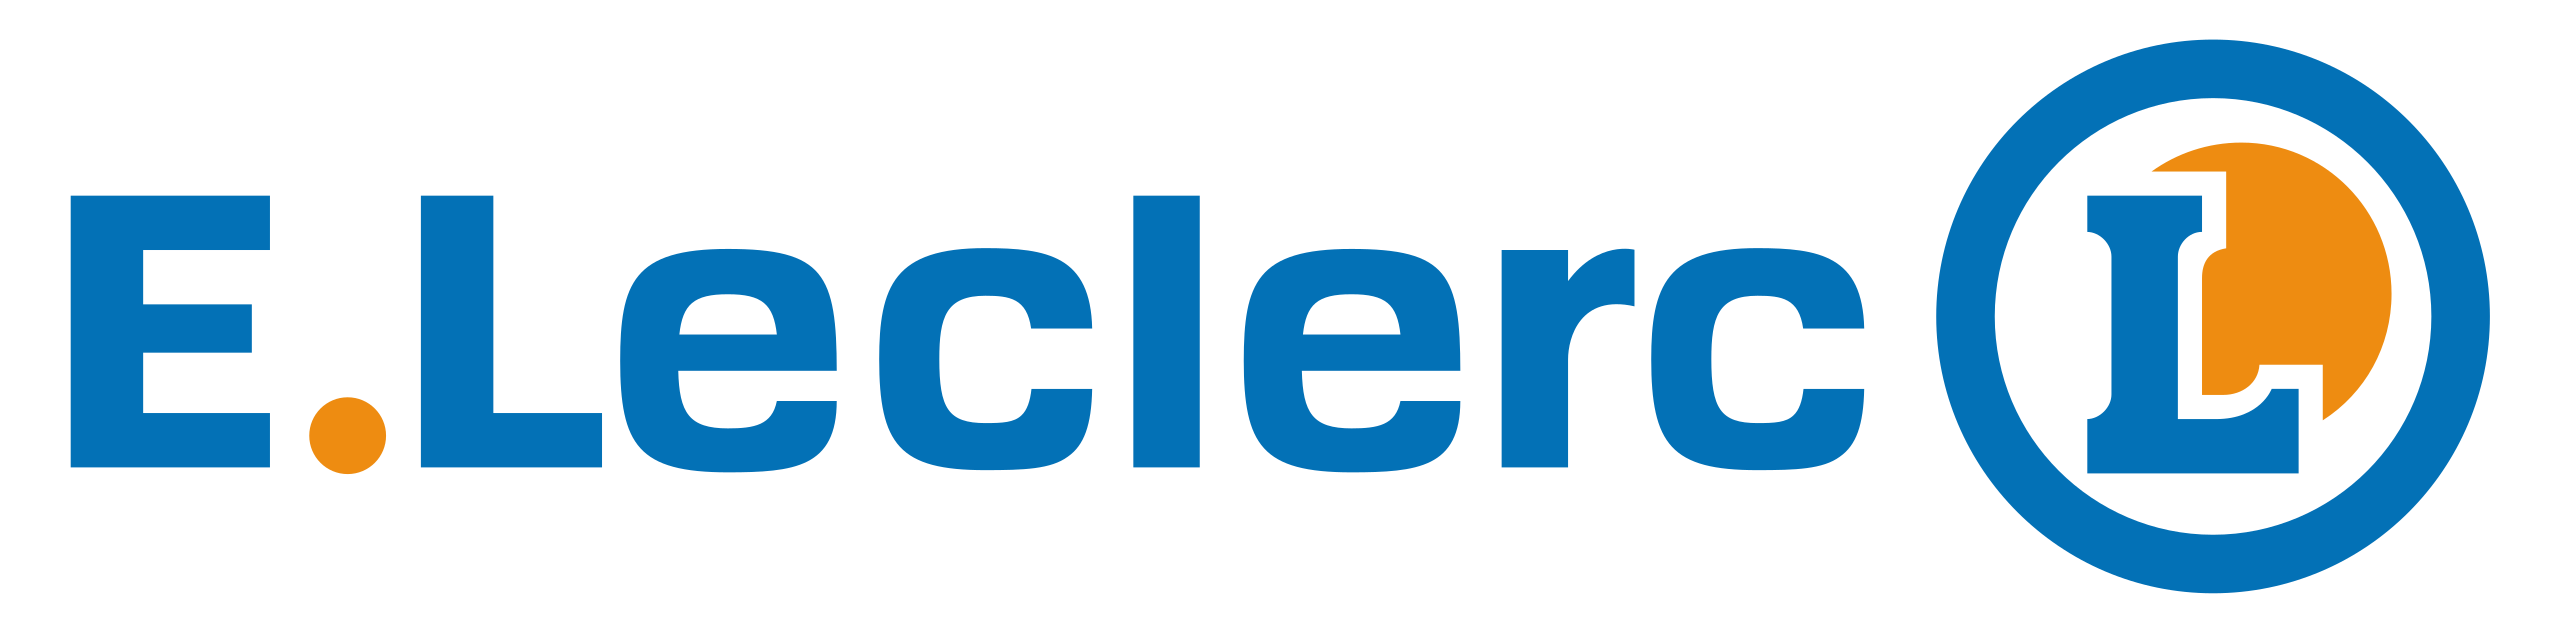 2560px e.leclerc logo 1